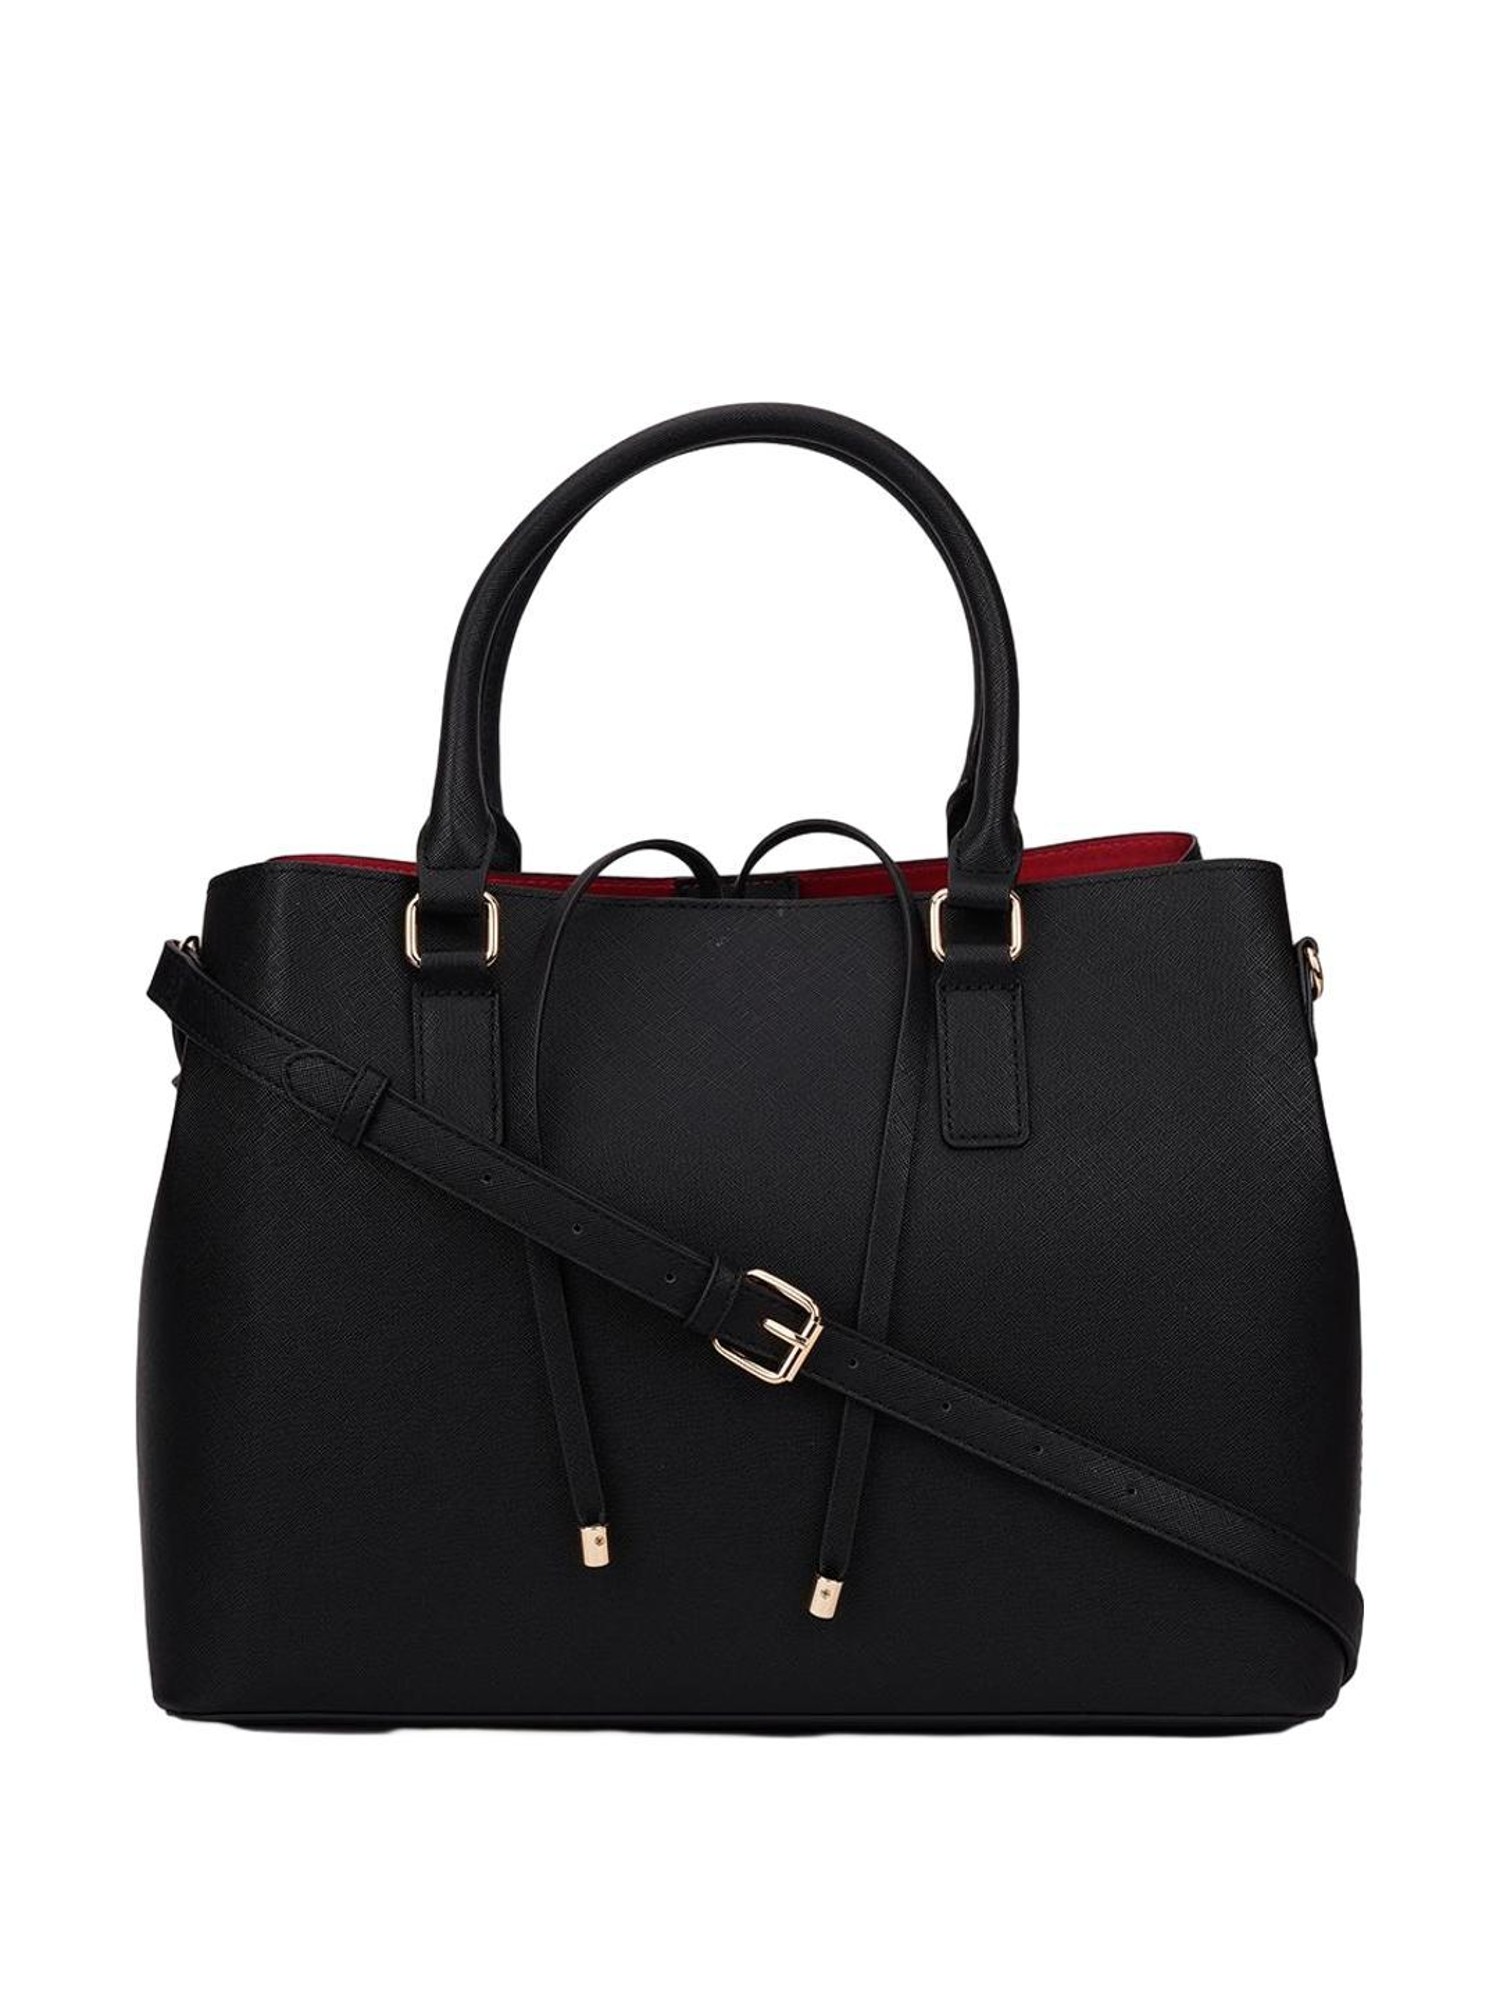 ALDO Mininoriee, Black/Black: Handbags: Amazon.com